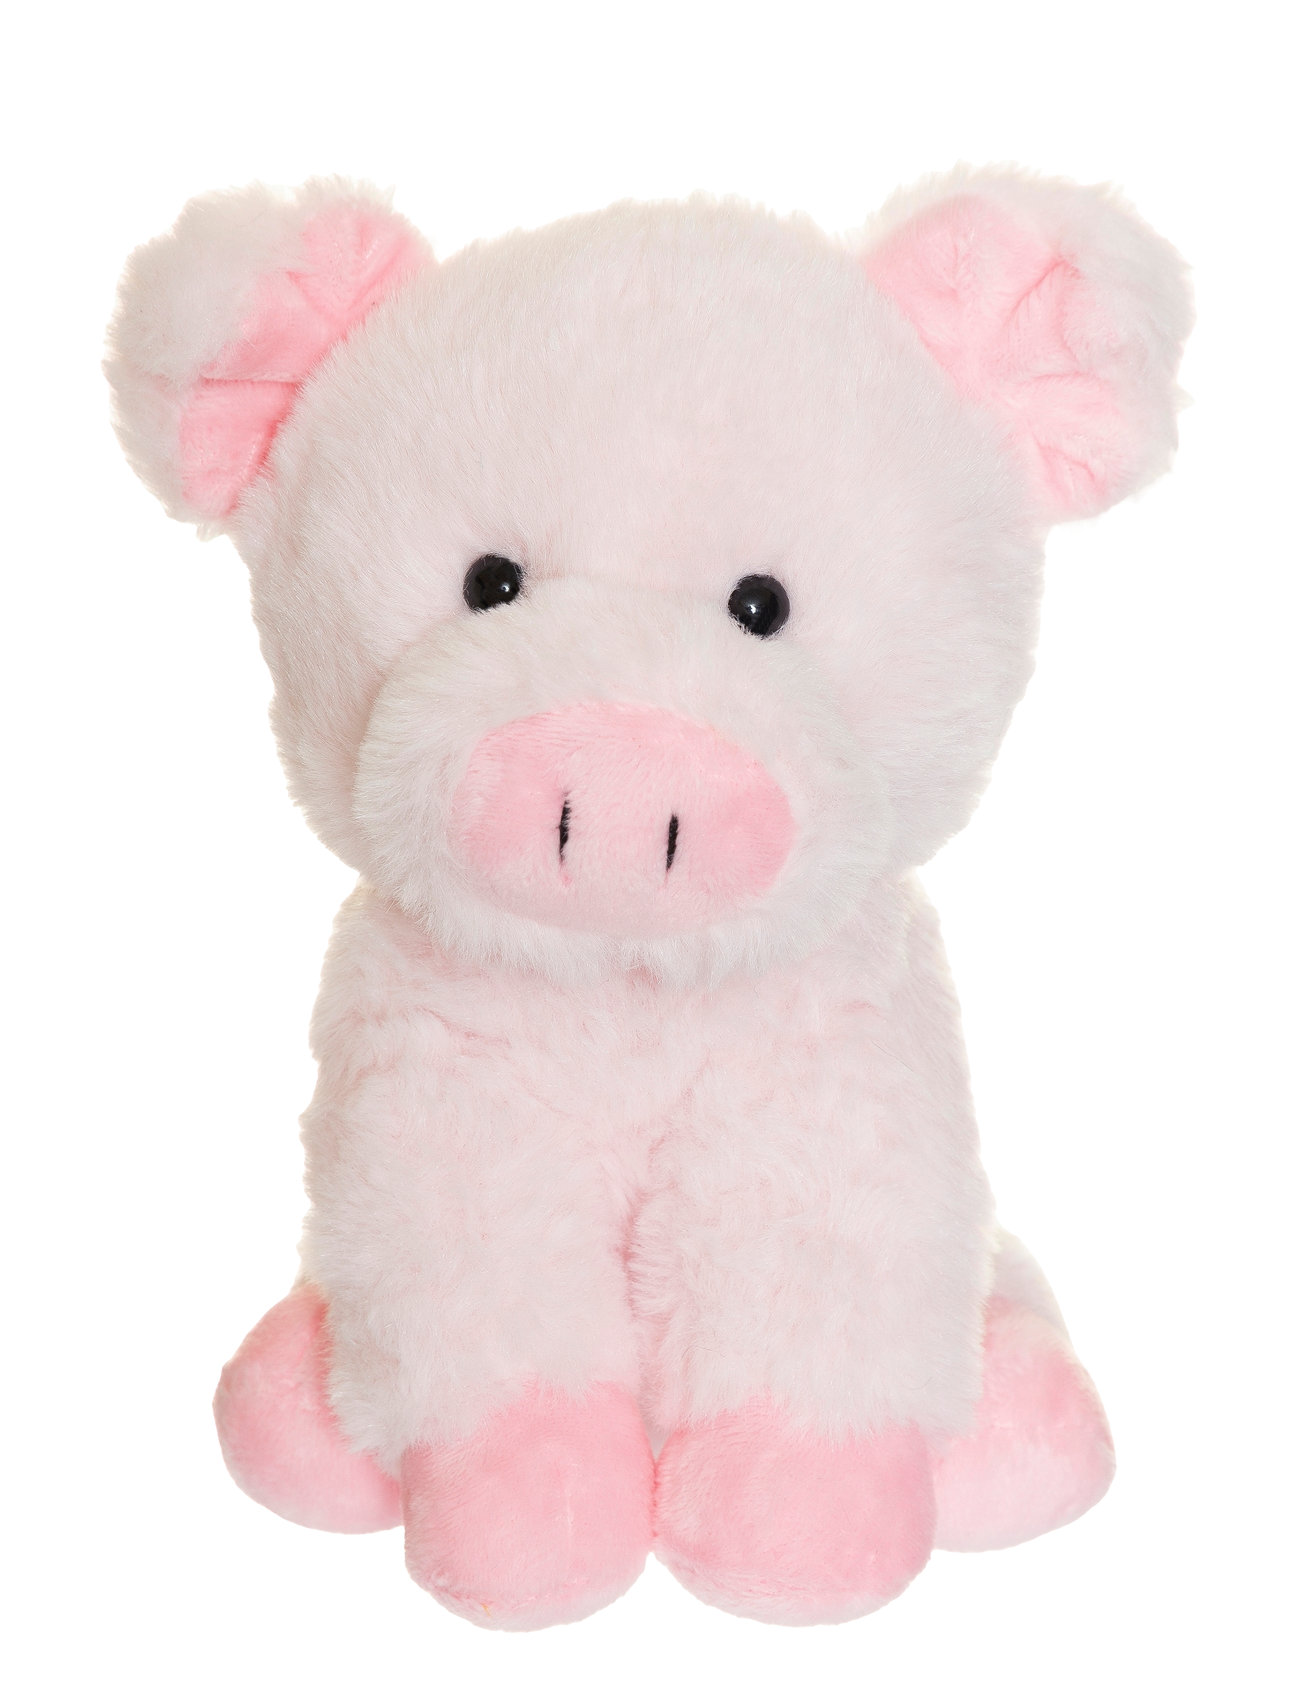 Teddy Farm, Sitting Pig Toys Soft Toys Stuffed Animals Pink Teddykompaniet